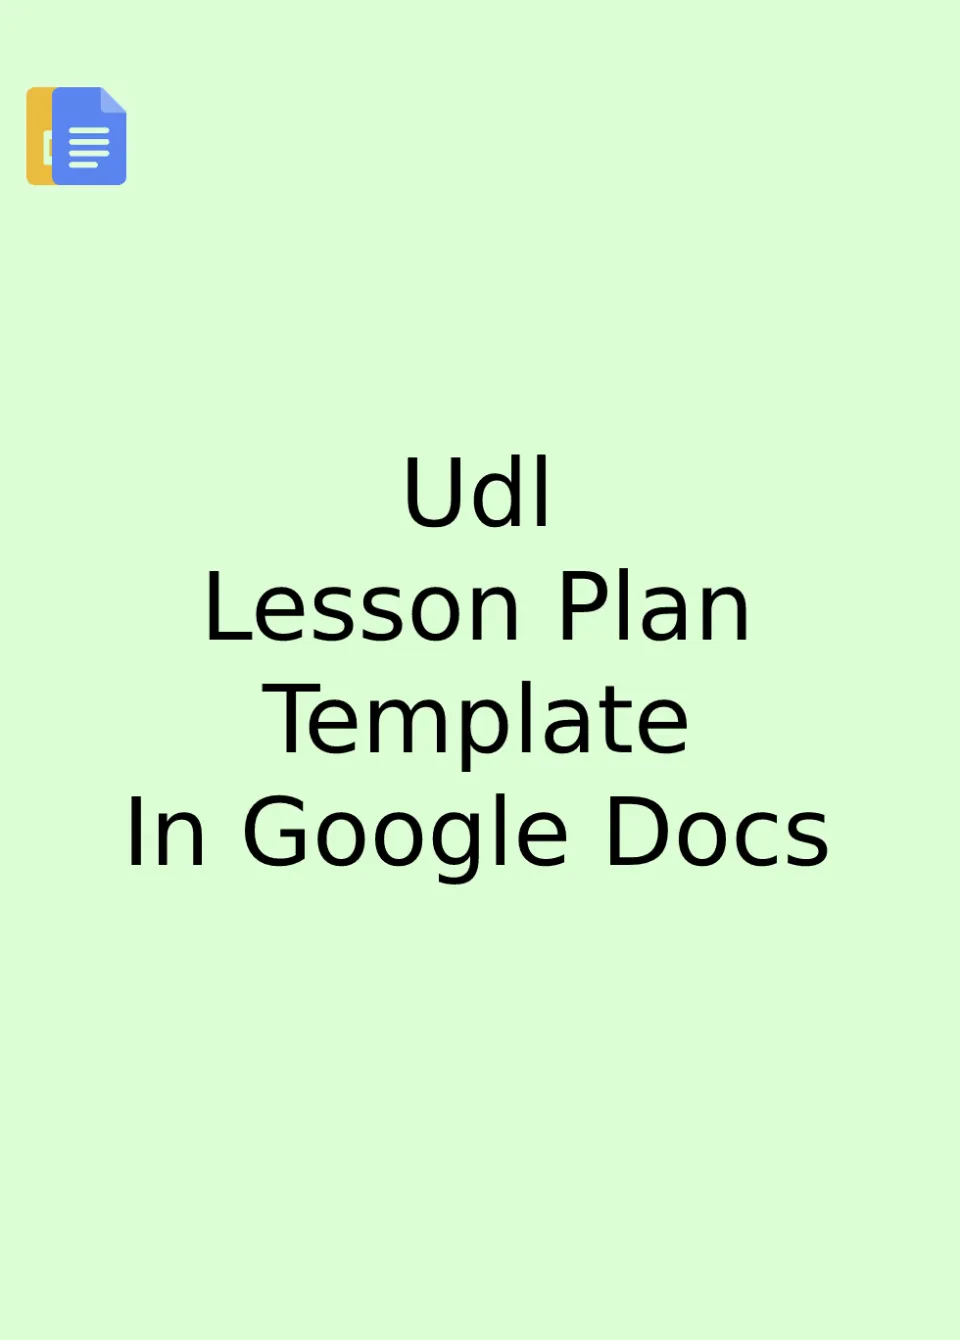 Udl Lesson Plan Template Google Docs